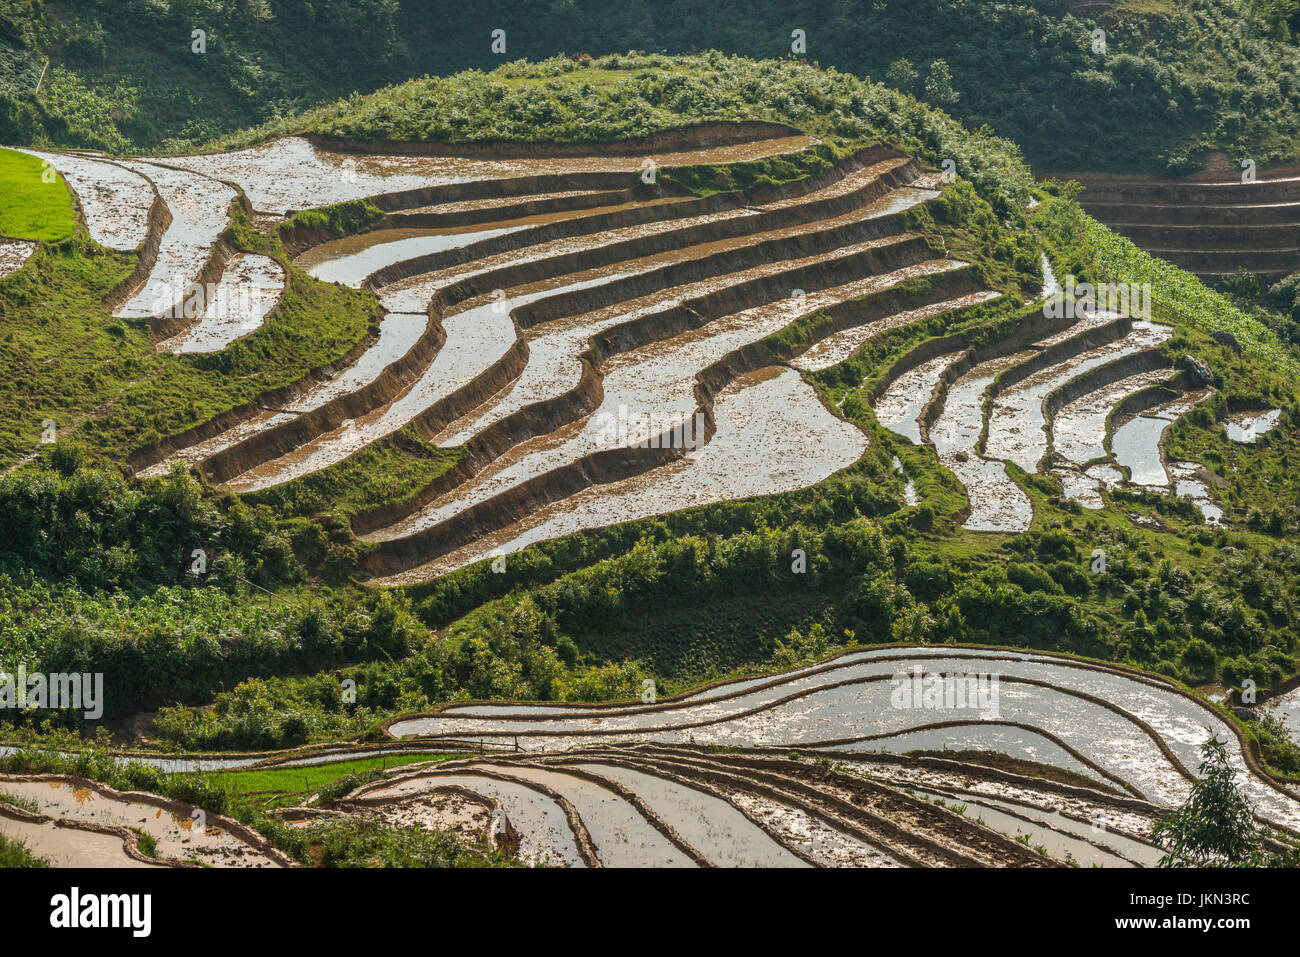 Vue panoramique sur les rizières près de Sapa, Vietnam du Nord. Banque D'Images